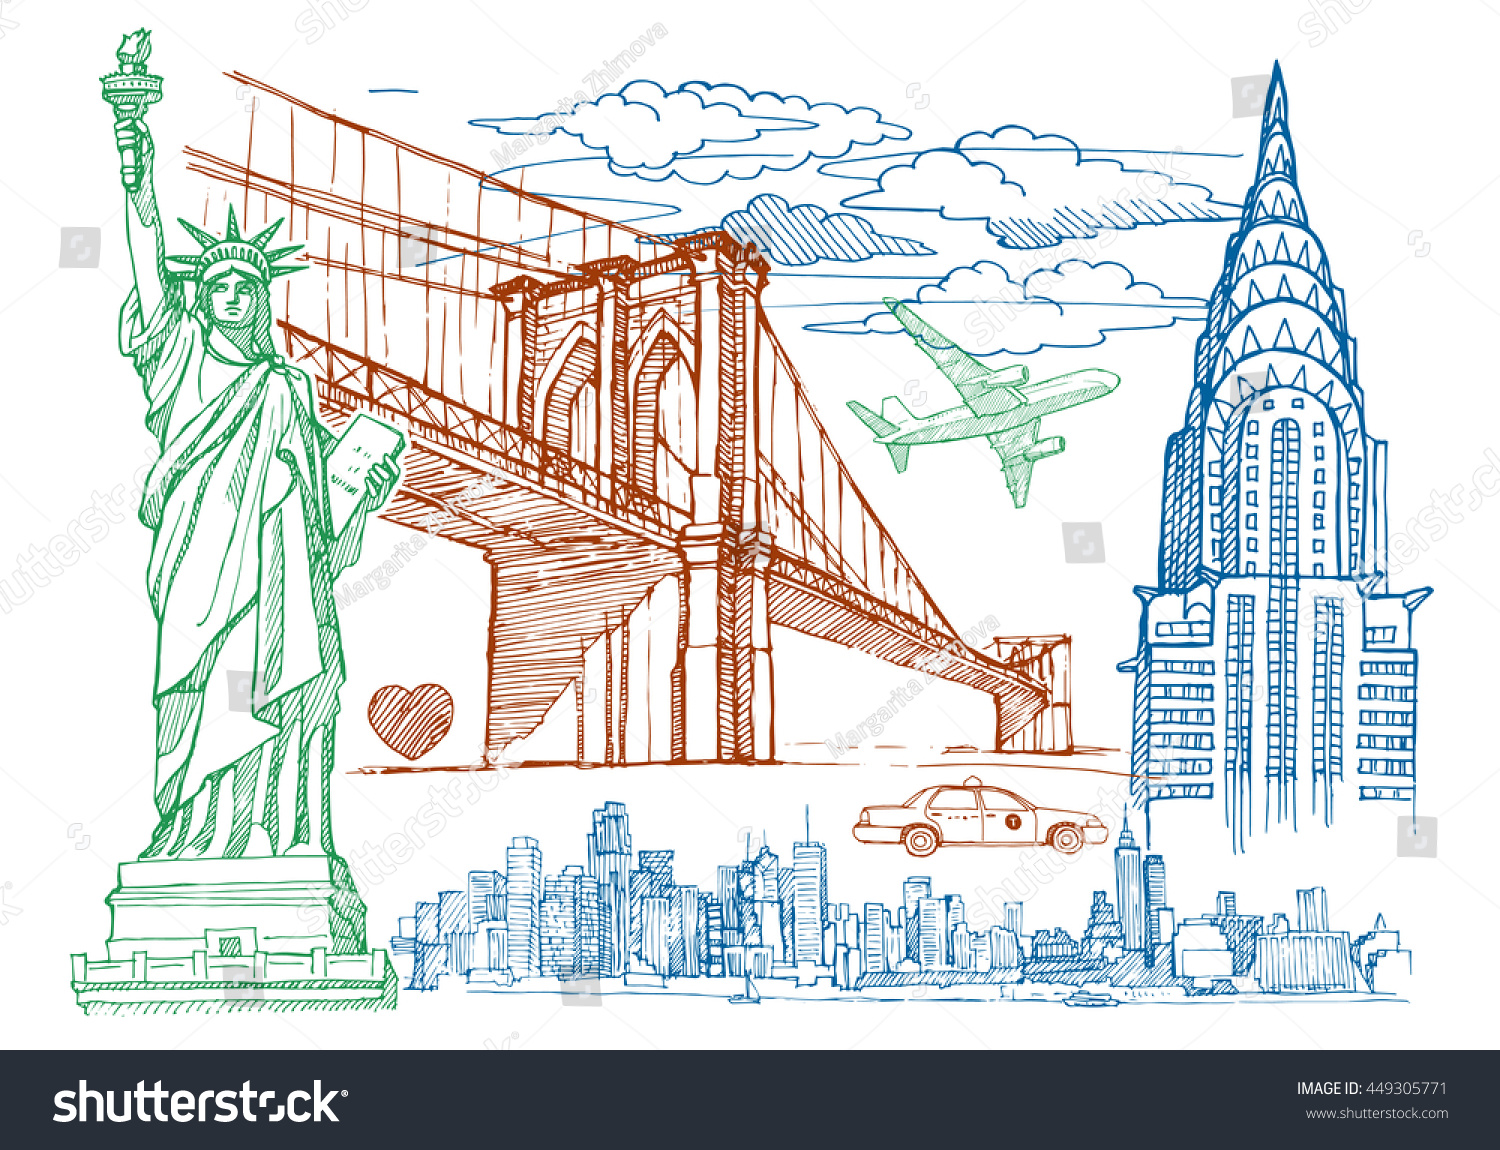 Статуя свободы и Бруклинский мост